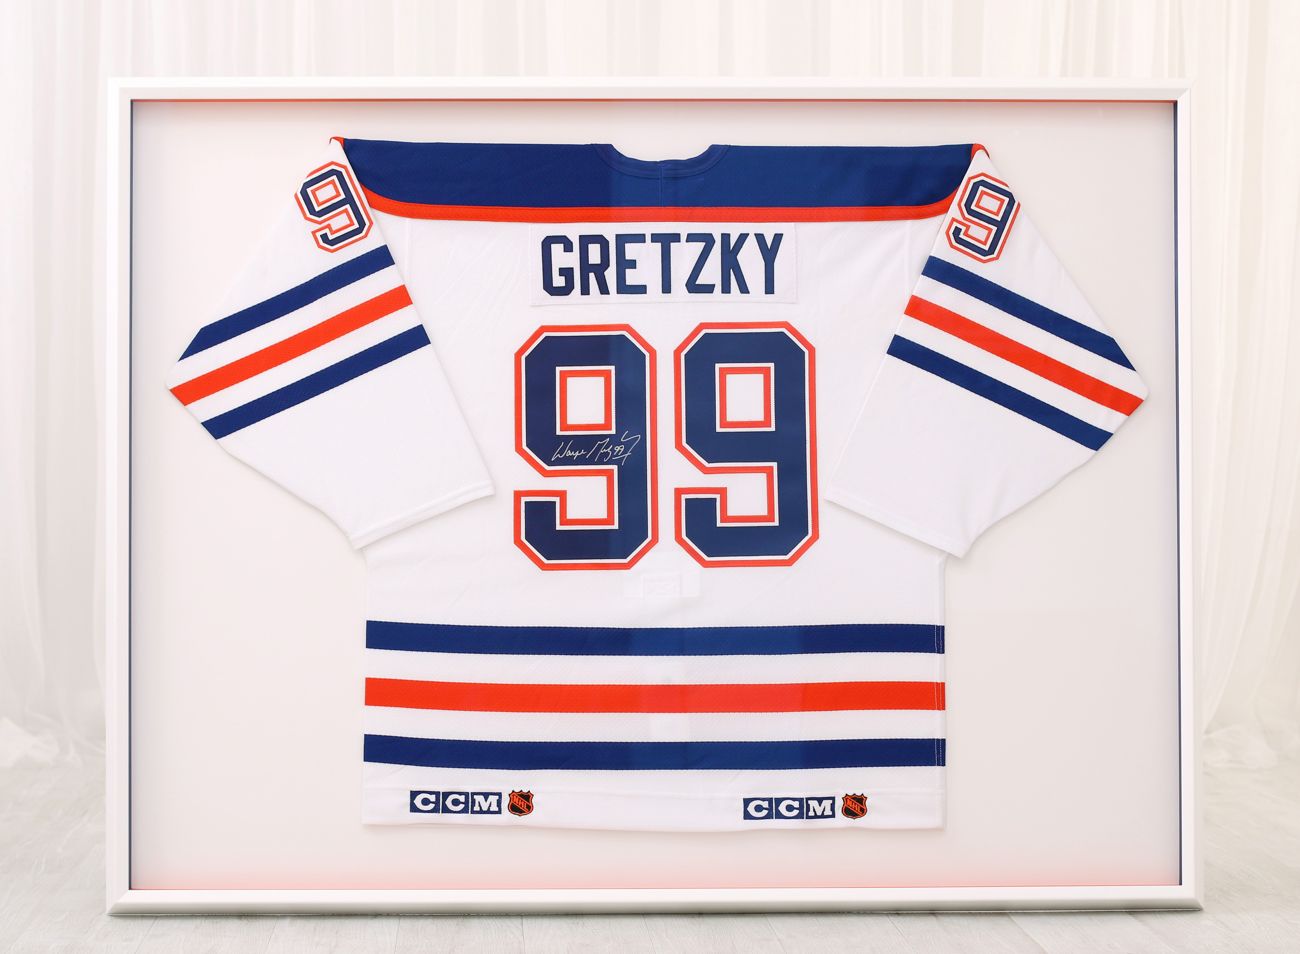 Zarámovaný retro hokejový dres Gretzky Edmonton oilers v bílém rámu | © Frameit.cz